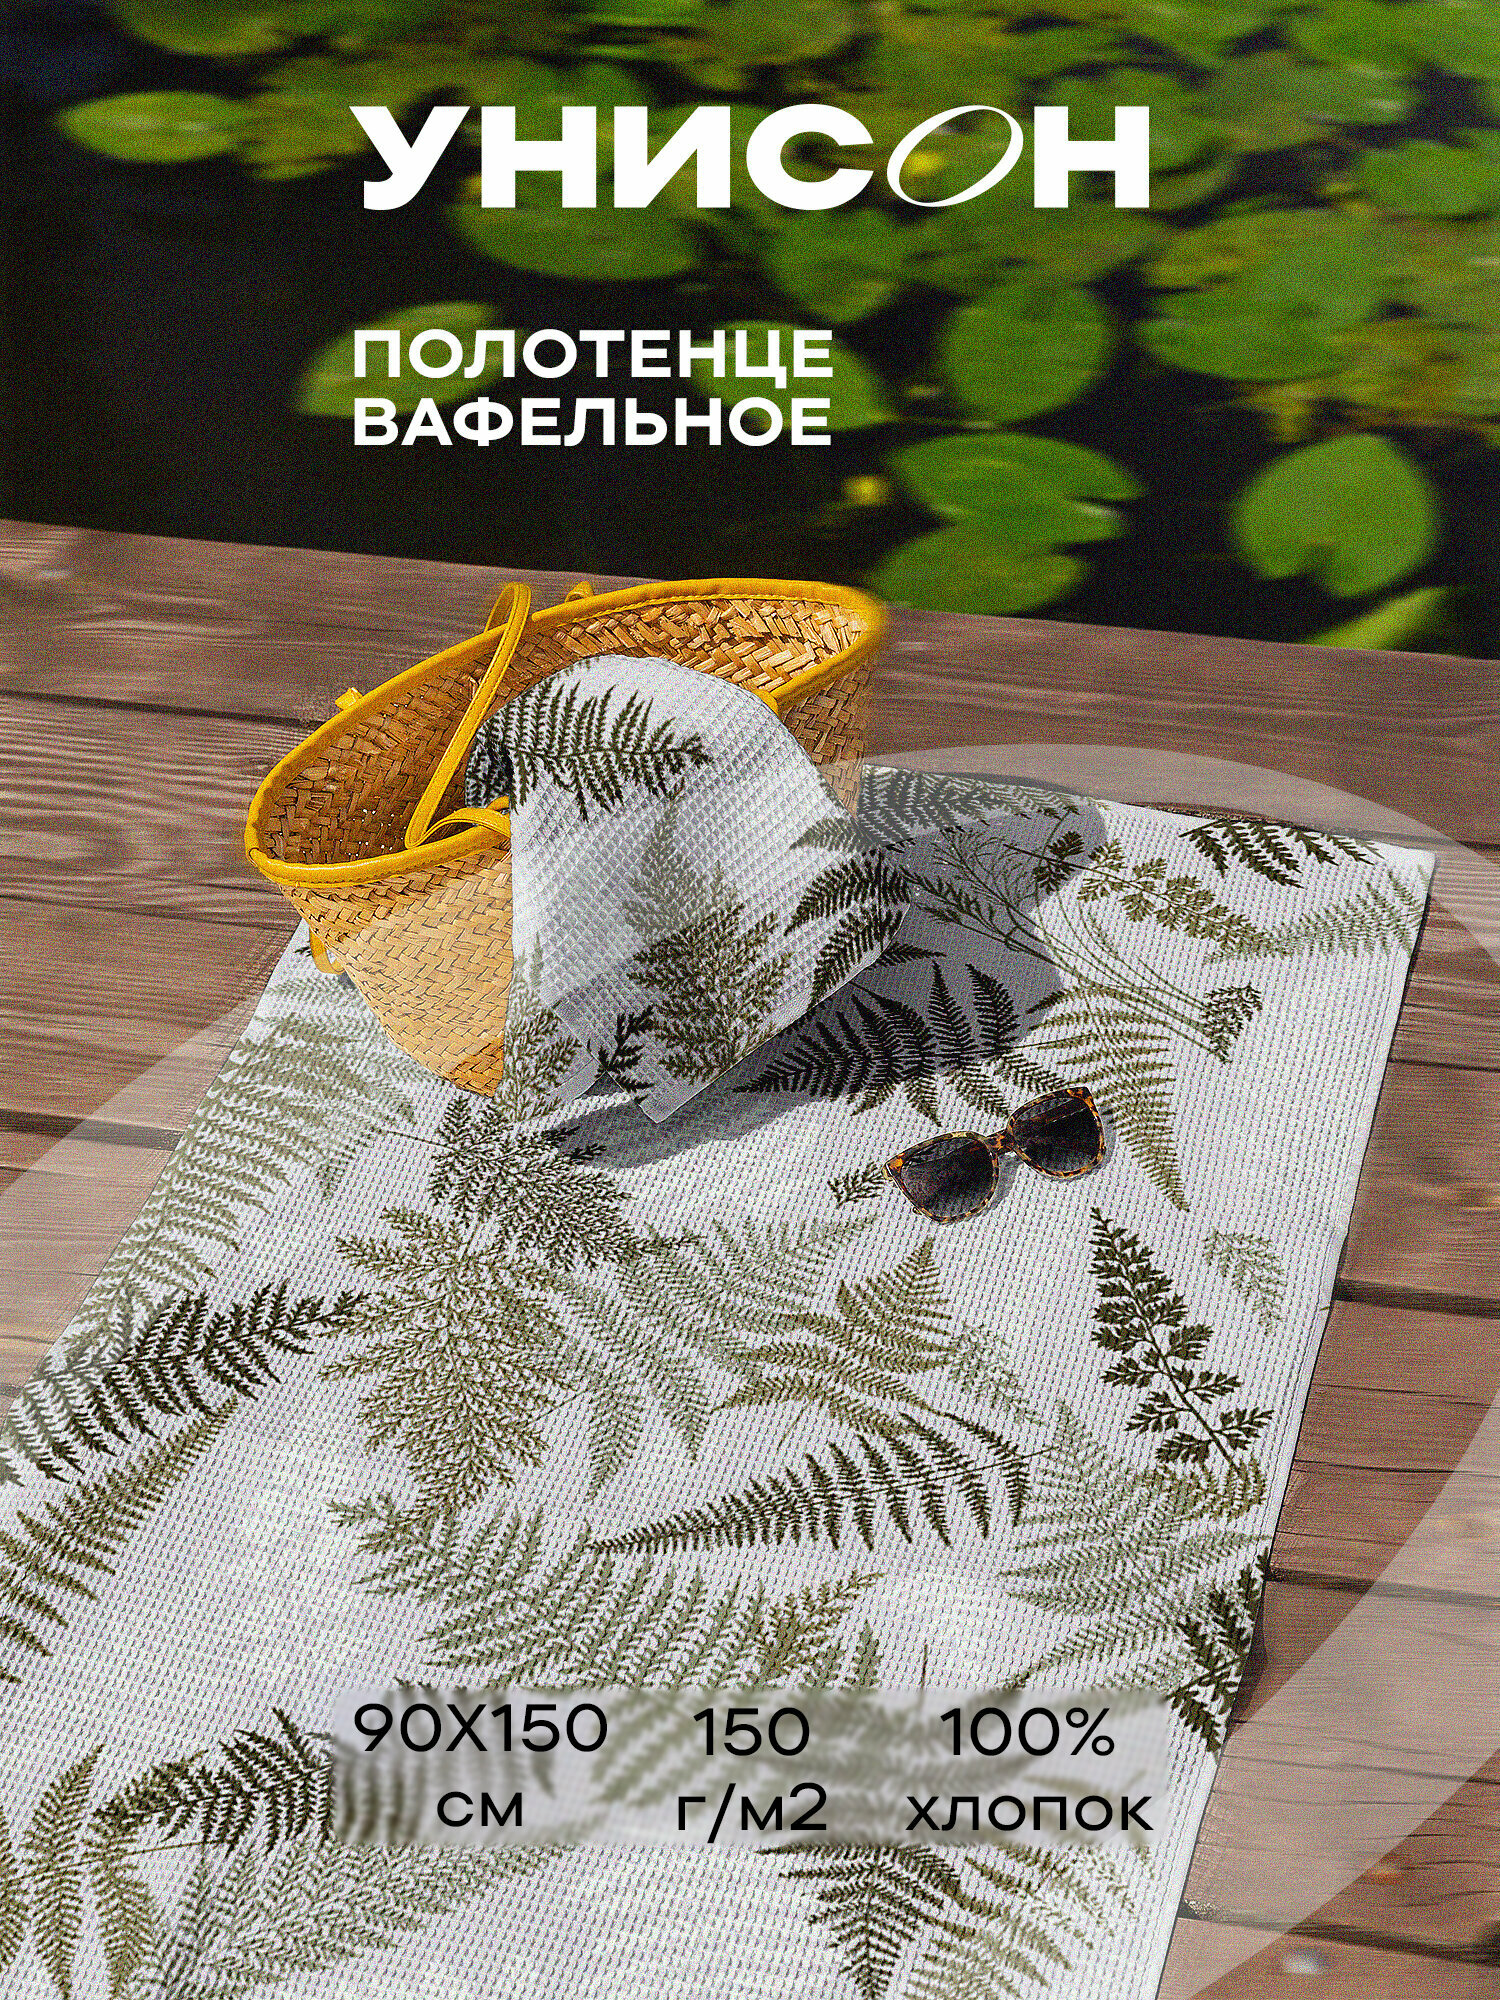 Полотенце вафельное пляжное 90х150 "Унисон" рис 33159-4 Fern - фотография № 7